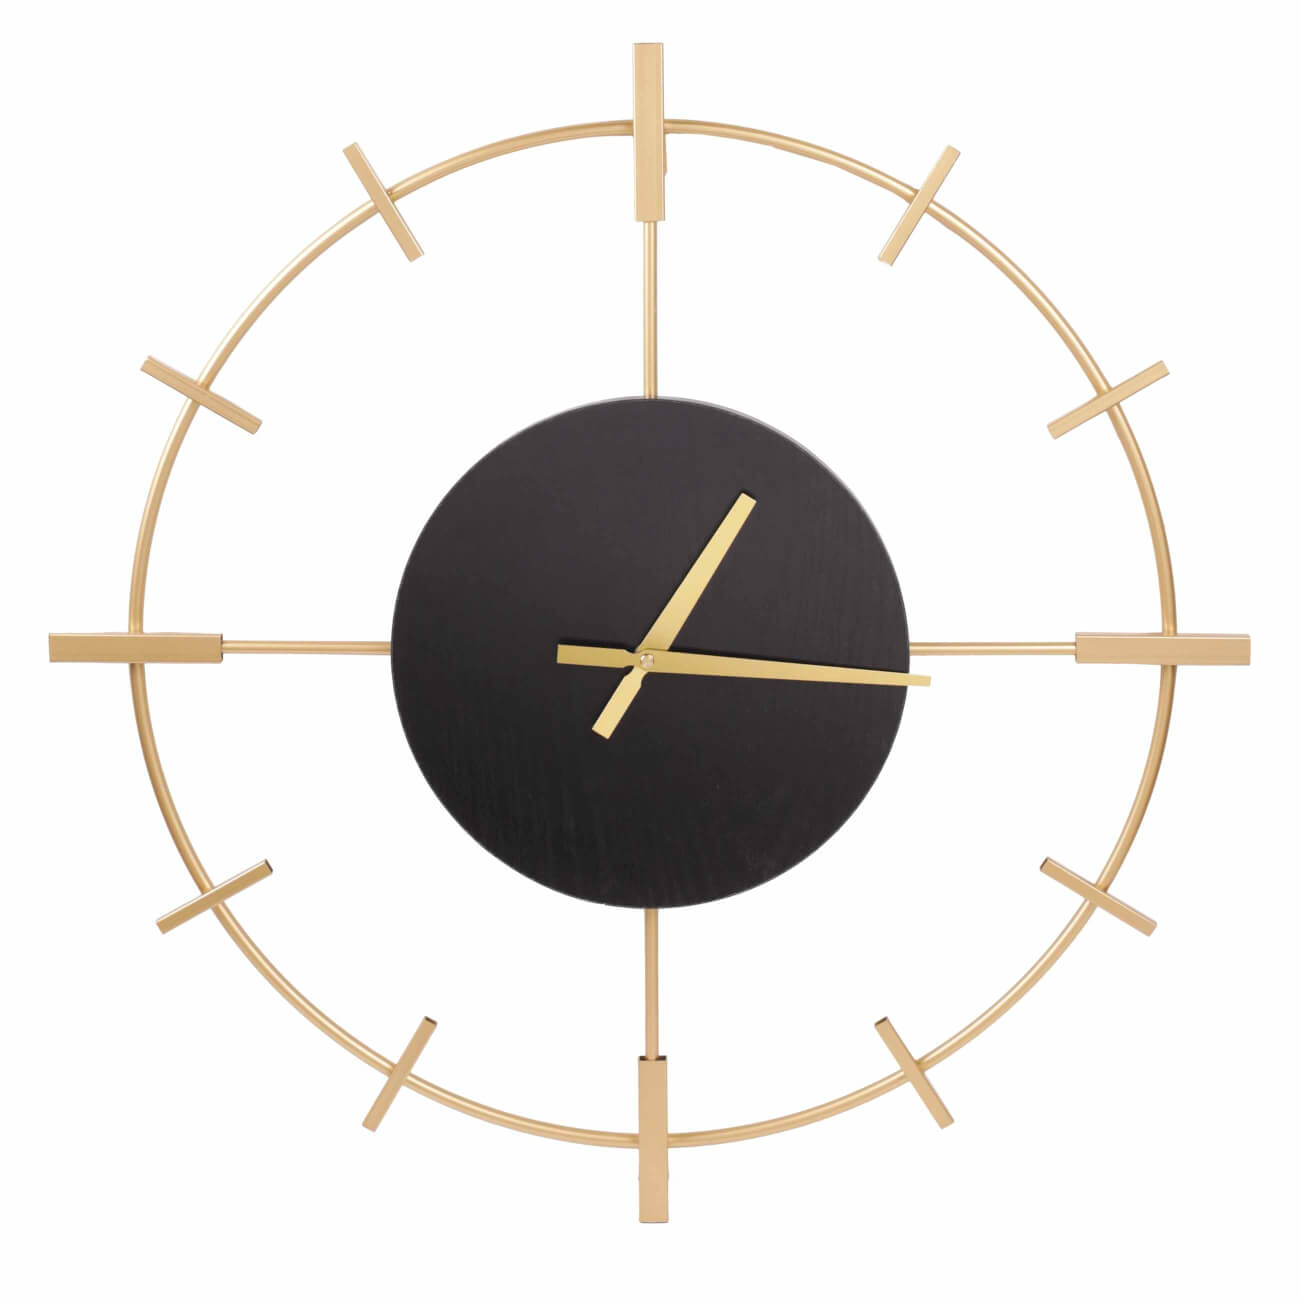 Часы настенные, 61 см, металл/дерево, круглые, черно-золотистые, Штурвал, Discovery часы настенные olaff круглые 32х4 5 см арт 152 33040